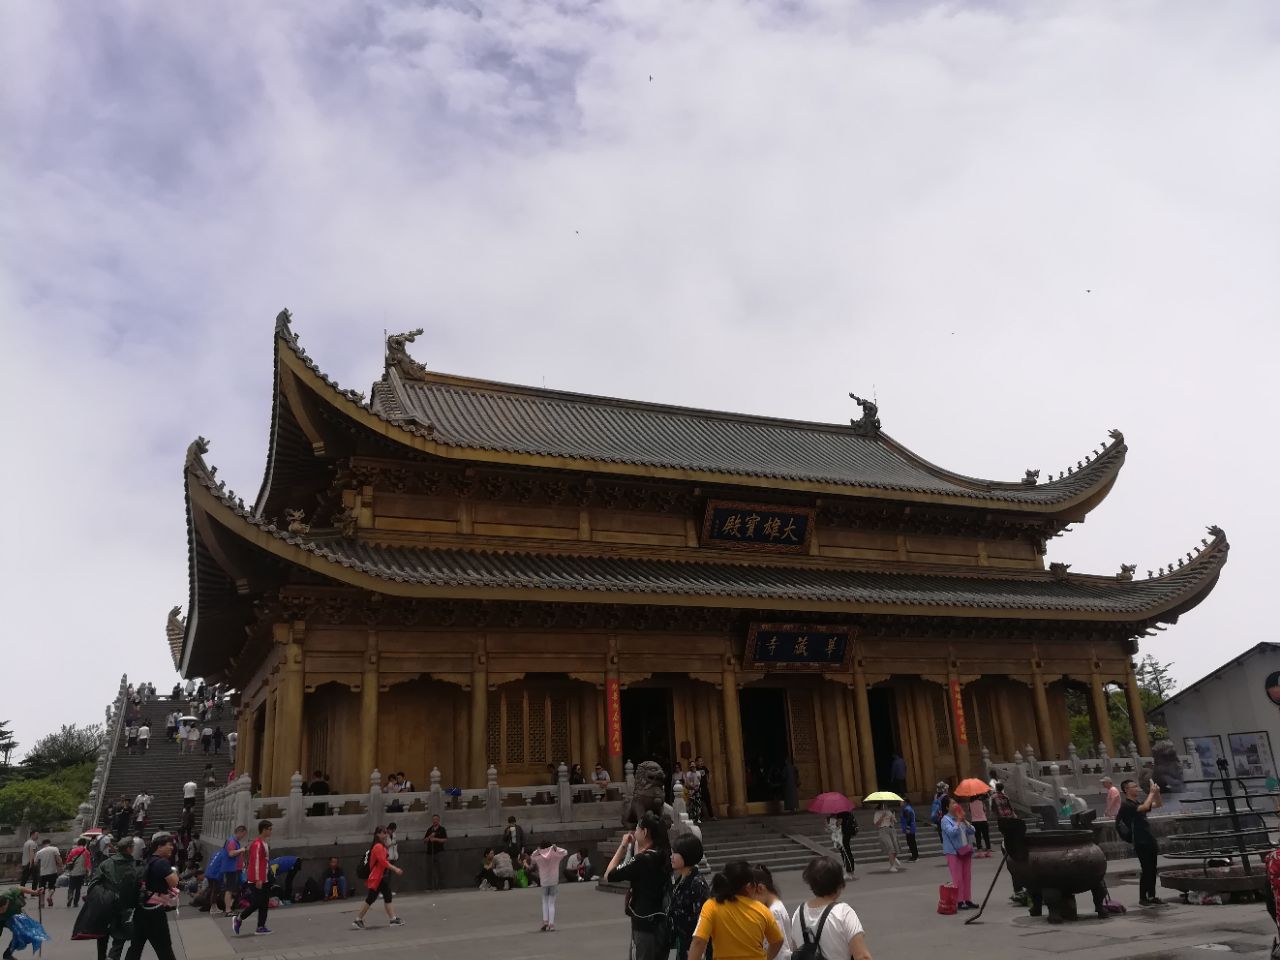 【携程攻略】福州金山寺景点,福州金山寺是闽江的一个著名景点，位于福州西郊洪塘村附近乌龙江上。…